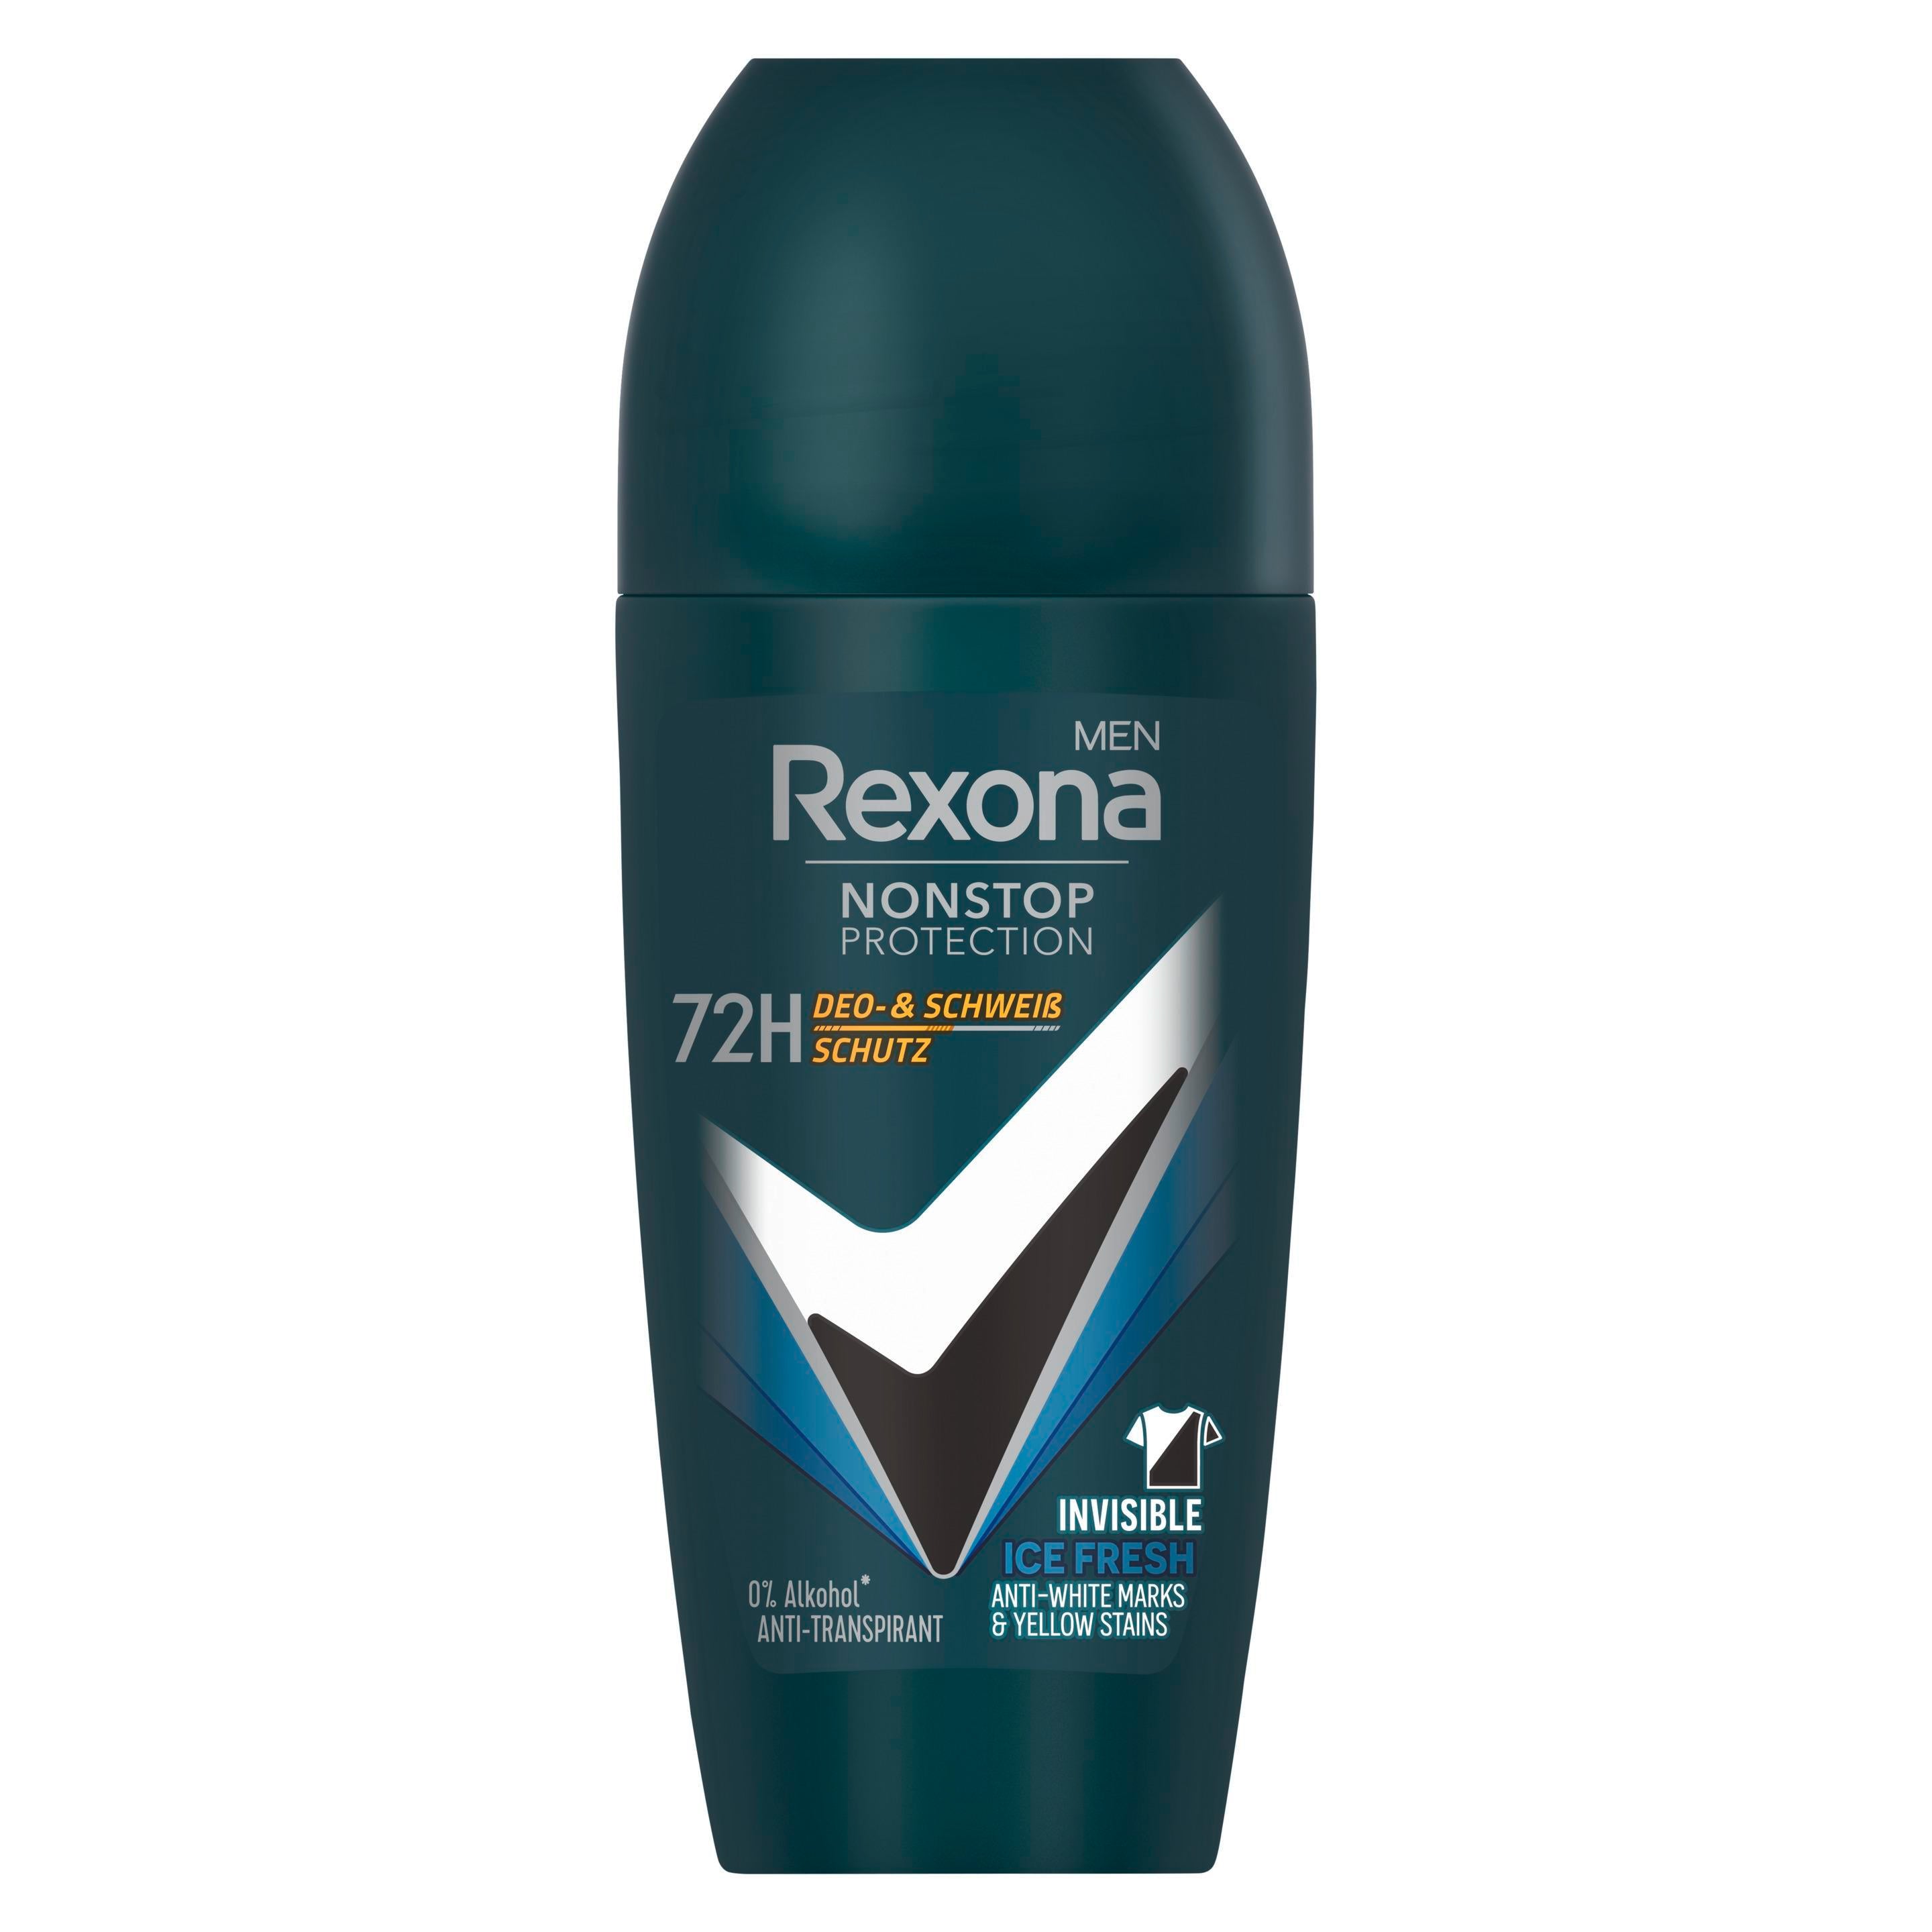 Rexona Men Nonstop Protection Deo Roll-On Invisible Ice Fresh Antitranspirant mit 72 Stunden Schutz vor Schweiß und Körpergeruch 50 ml